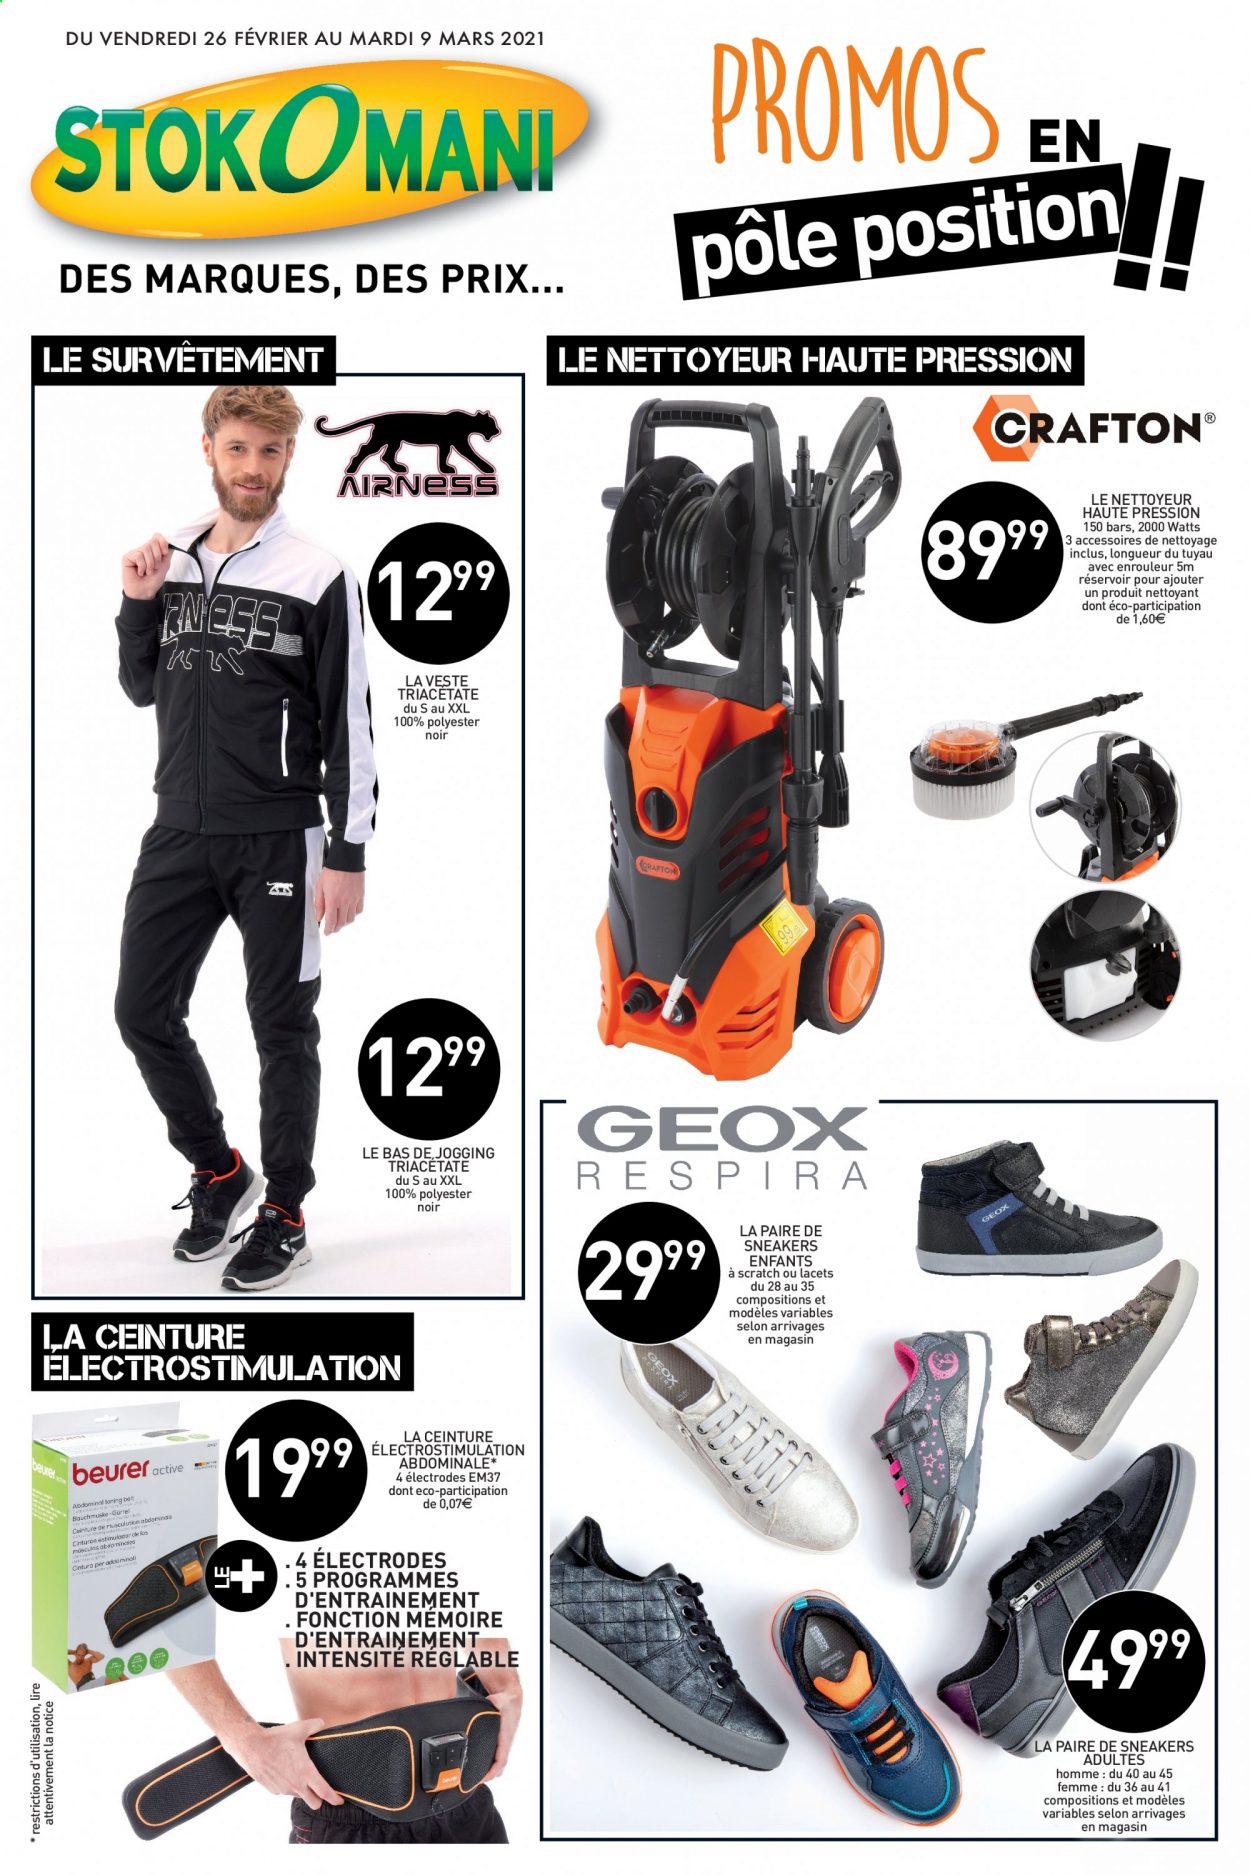 thumbnail - Catalogue Stokomani - 26/02/2021 - 09/03/2021 - Produits soldés - Sneakers, veste, survêtement de sport, ceinture, nettoyeur haute pression. Page 1.